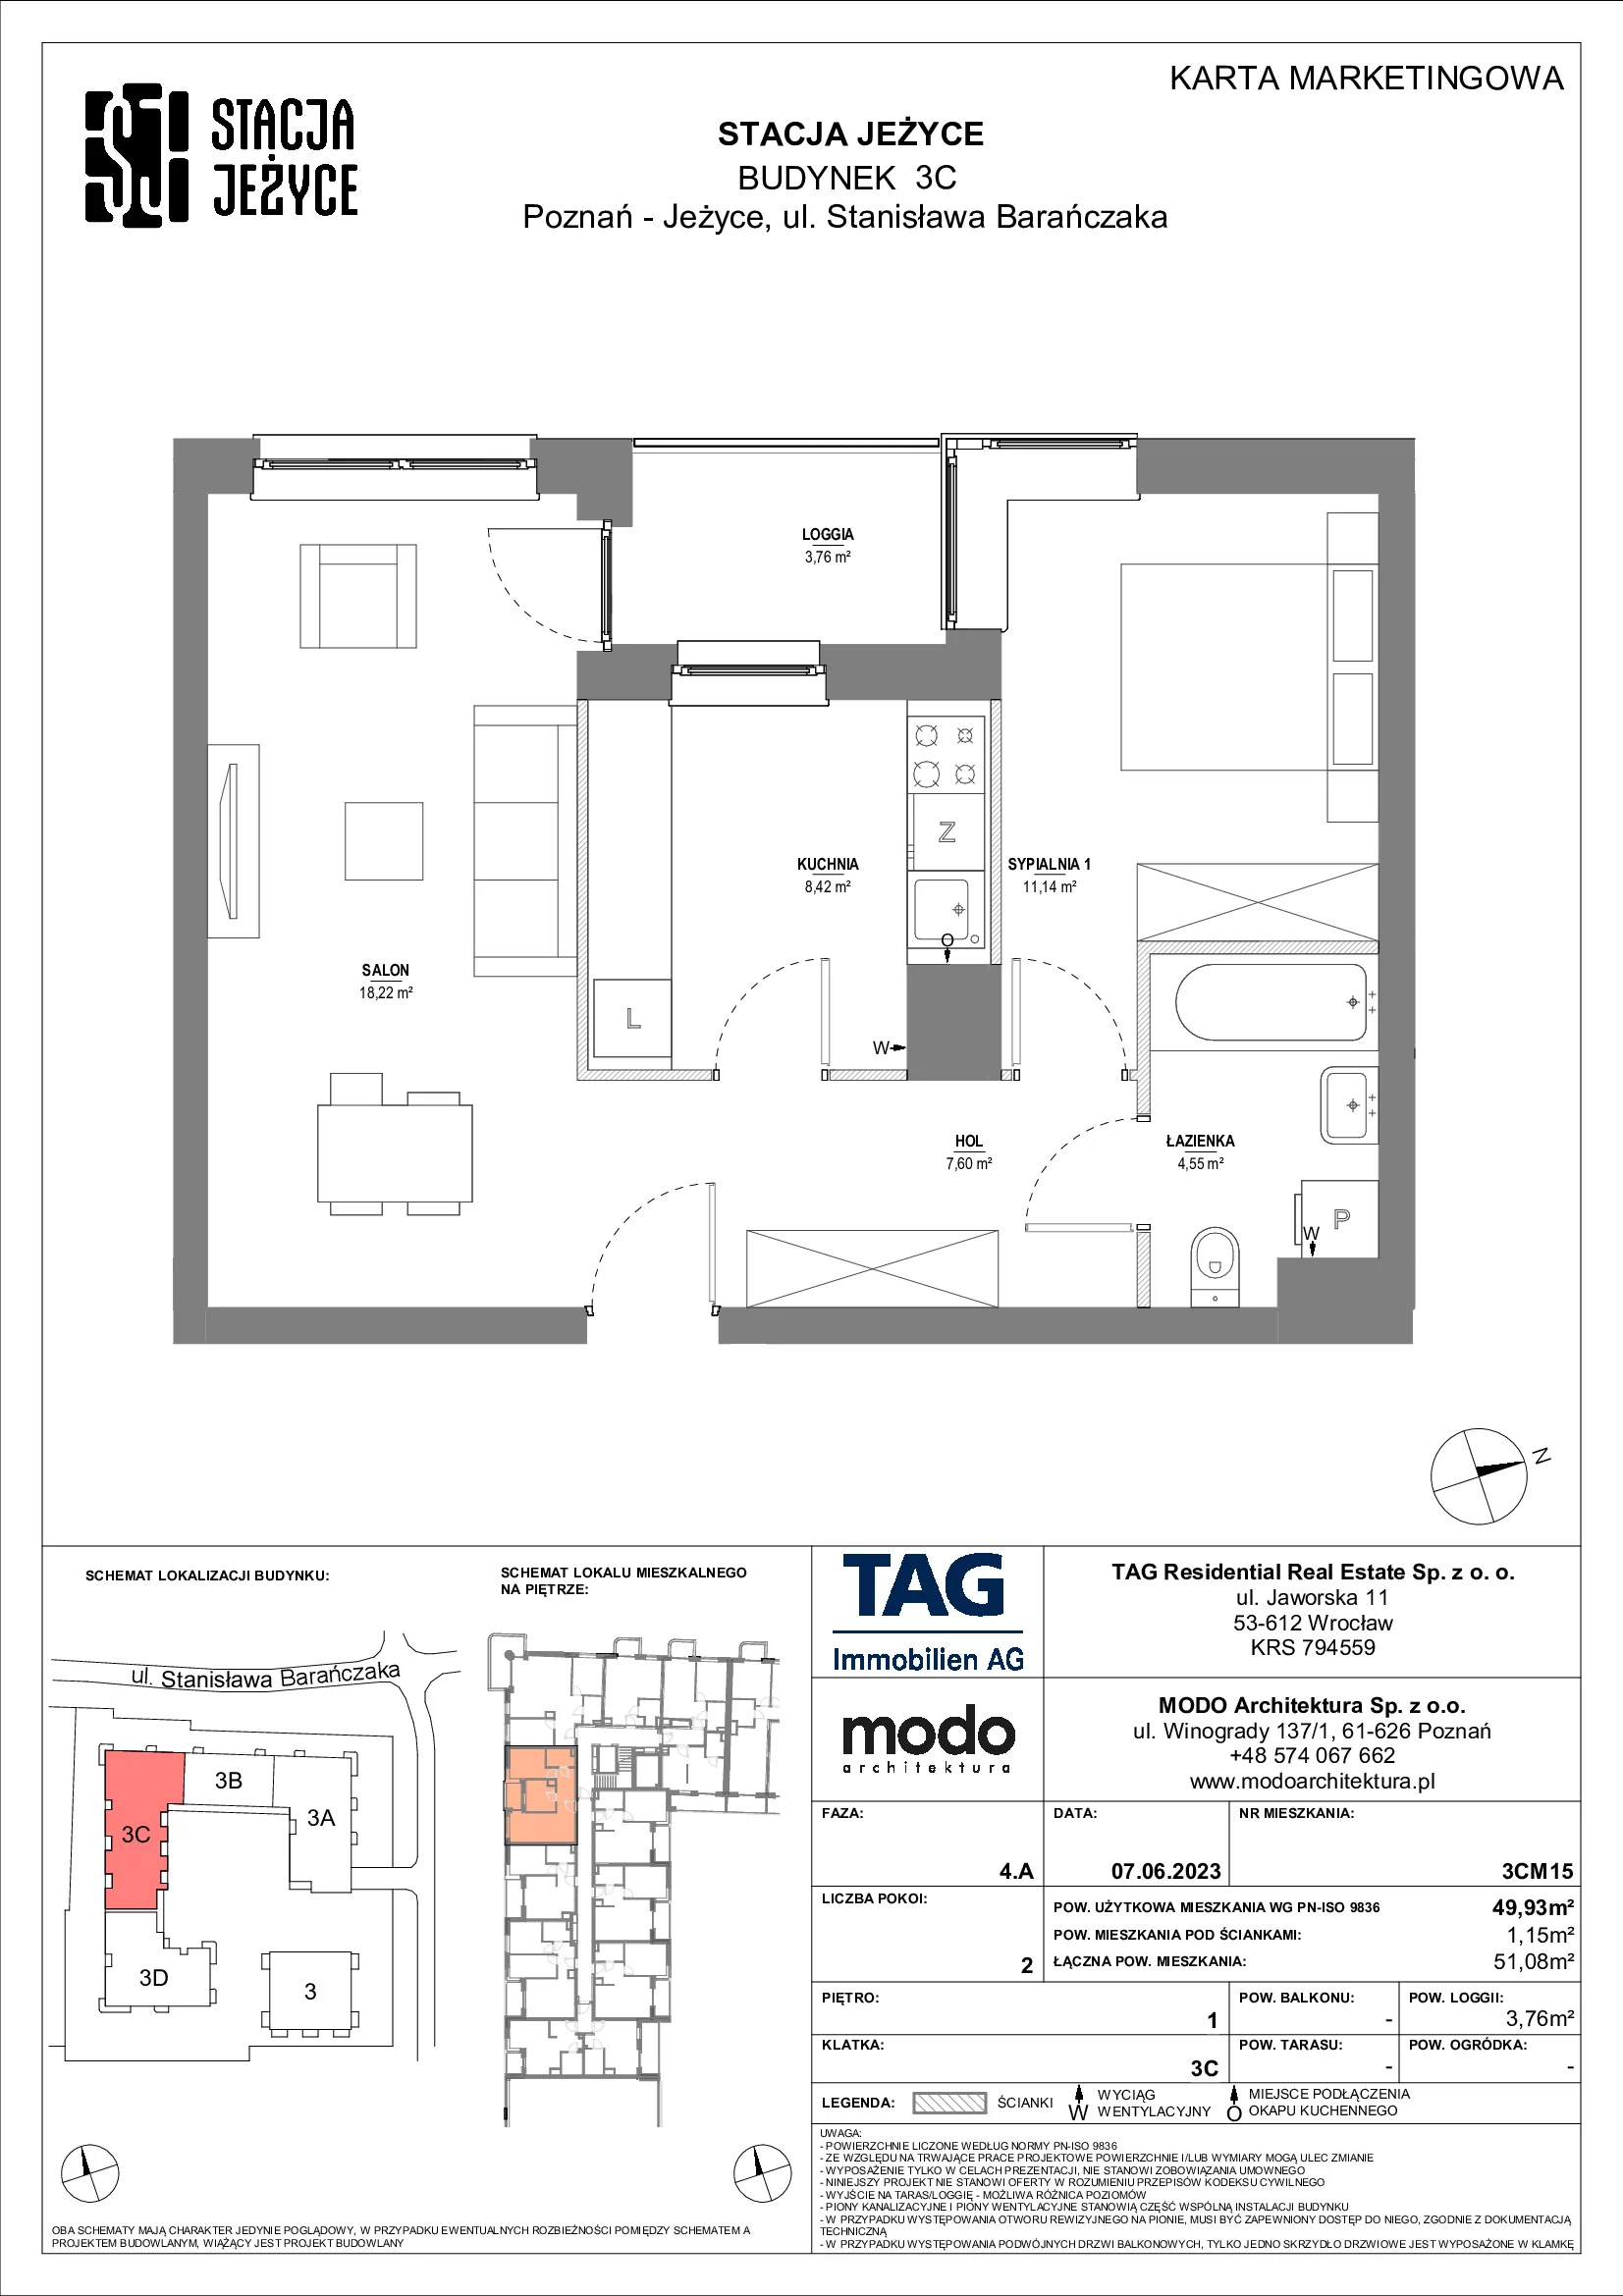 Mieszkanie 49,93 m², piętro 1, oferta nr 3CM15, Stacja Jeżyce, Poznań, Jeżyce, Jeżyce, ul. Stanisława Barańczaka 3